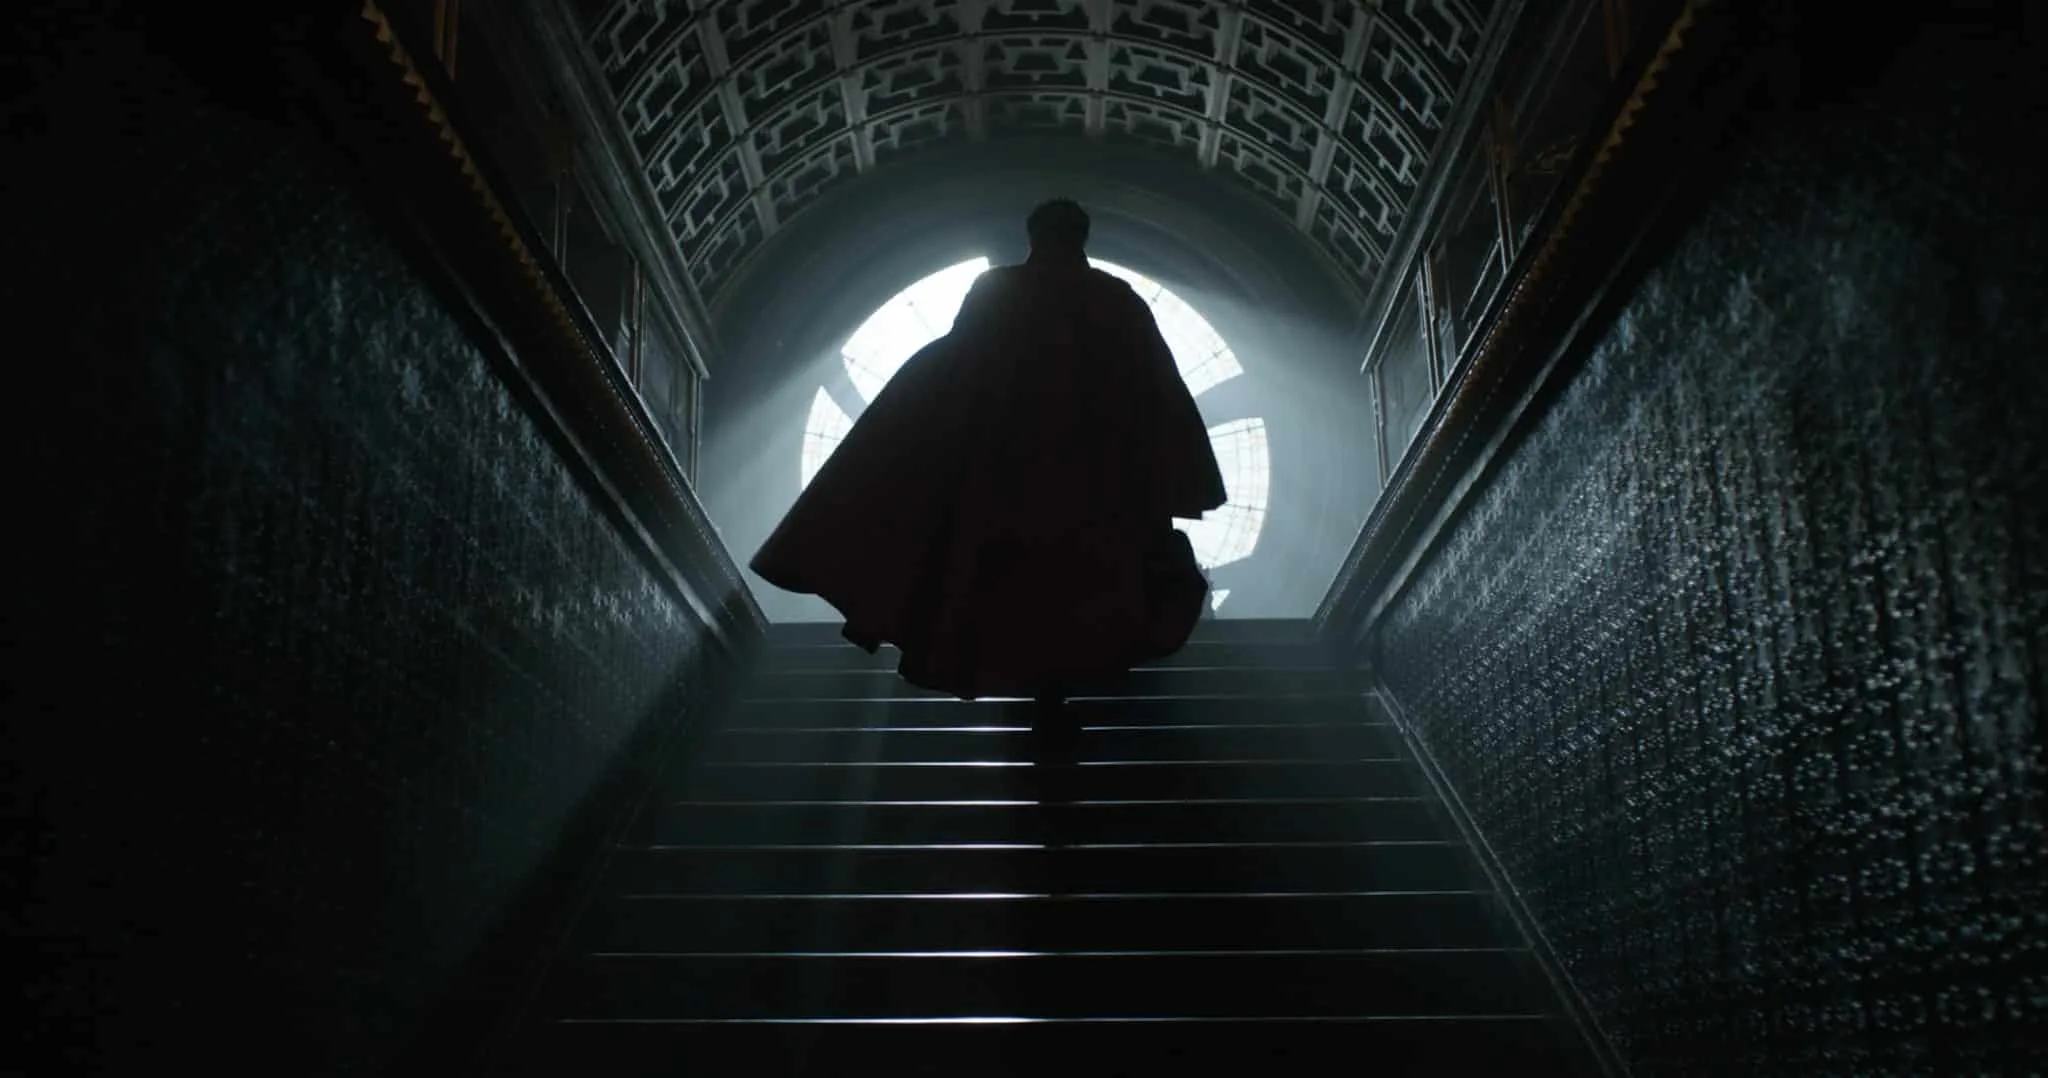 NEW Featurette for Marvel's Doctor Strange! #DoctorStrange | ThisNThatwithOlivia.com